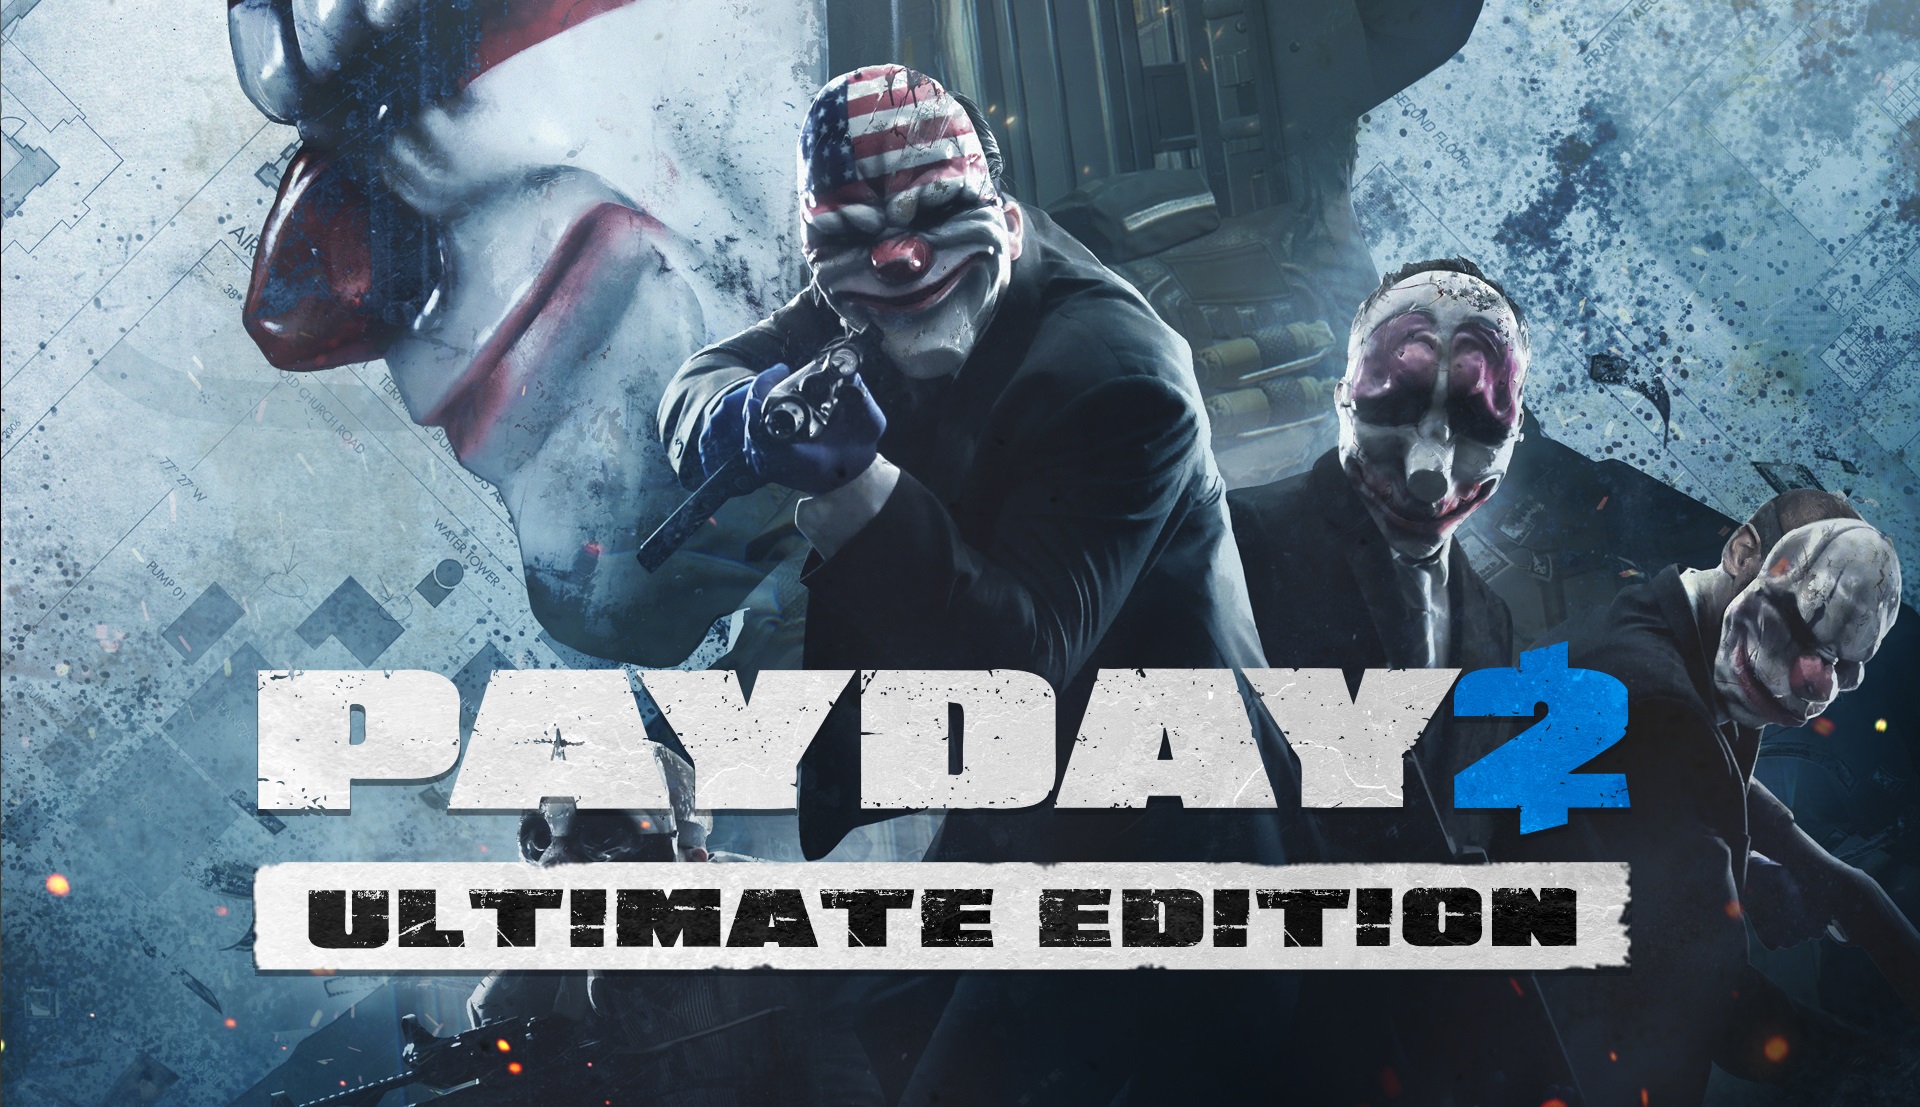 Payday2 スカルマスクを被った犯罪者集団 Fps アクション 最新情報 プレイ方法 まとめ 攻略 いちどりの部屋